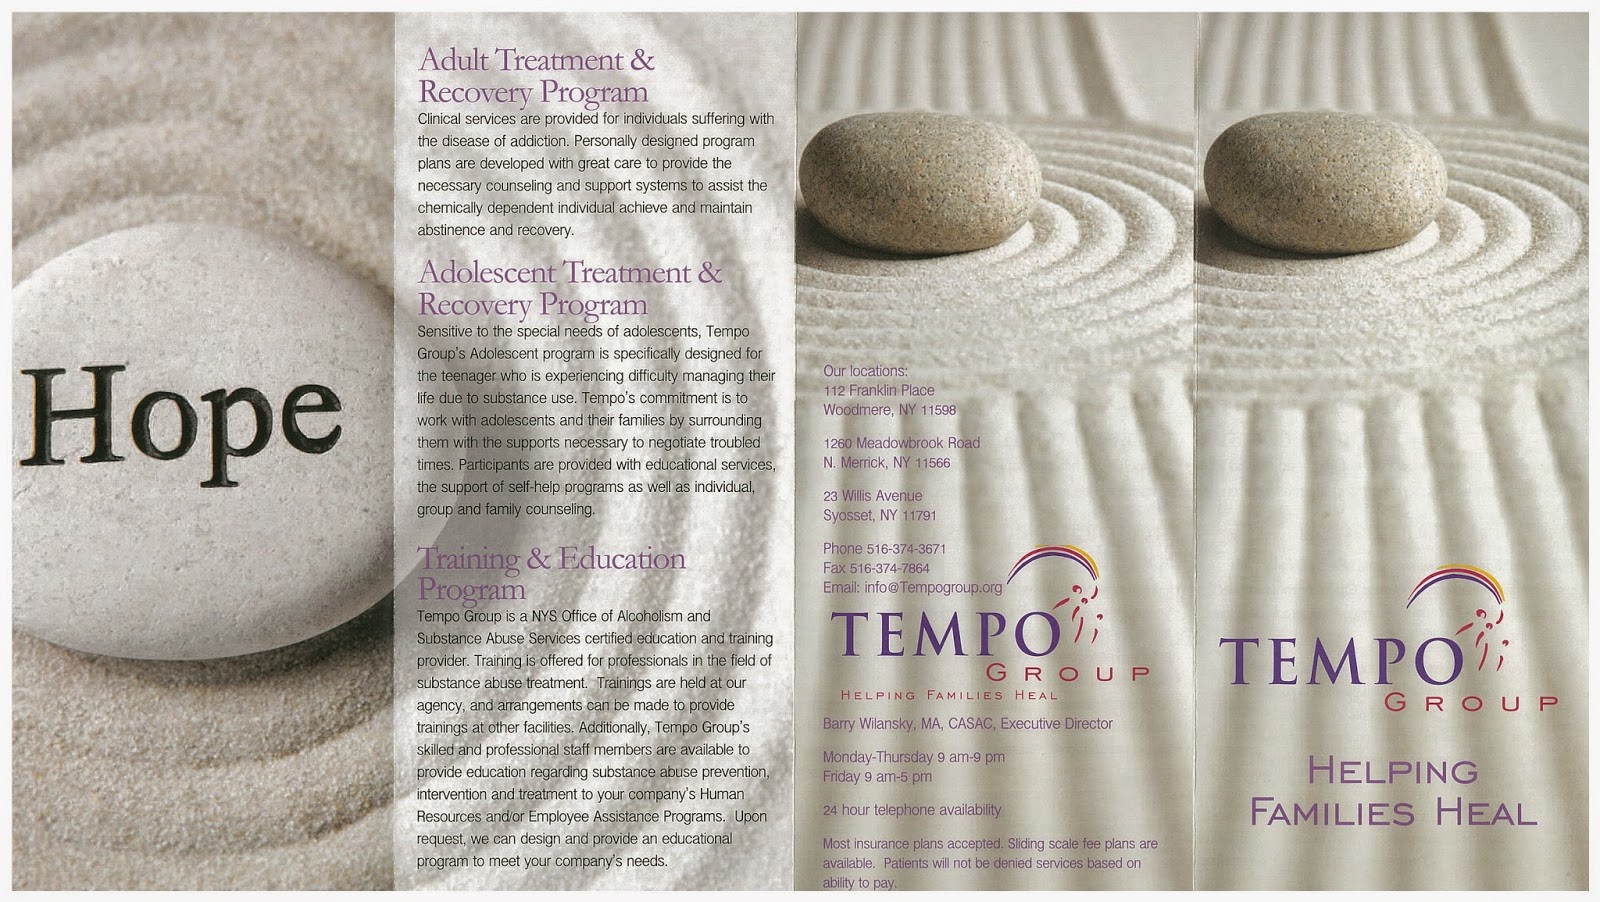 Tempo Group - Outpatient Drug Treatment Program